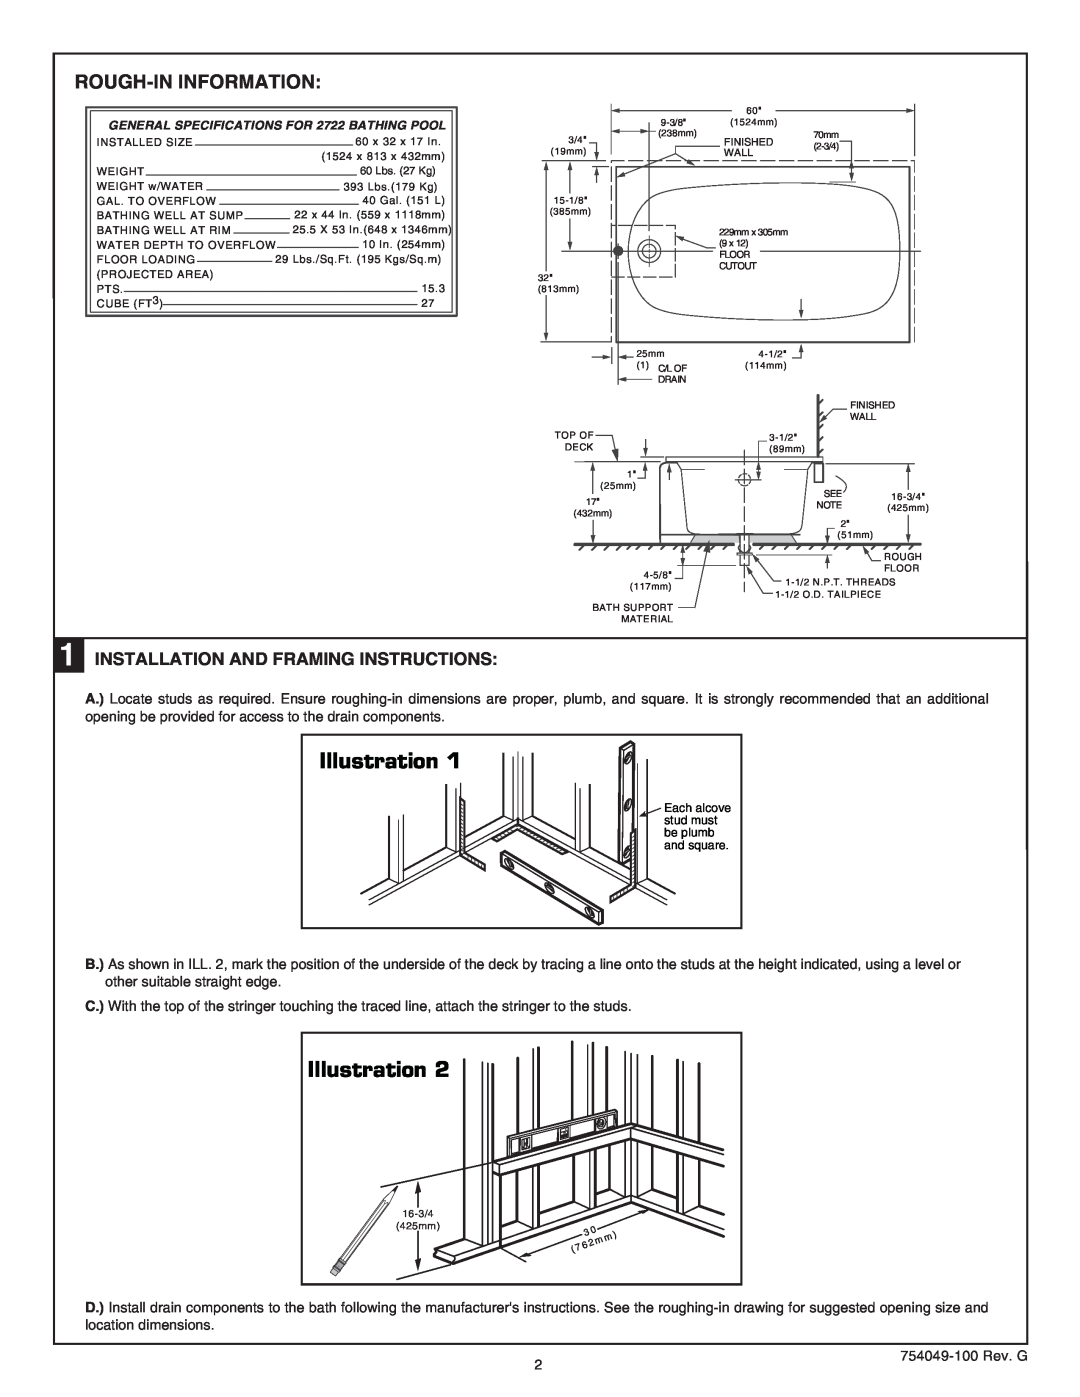 American Standard 2722.102 RHO, 2722.102 LHO installation instructions Illustration, Rough-Ininformation 